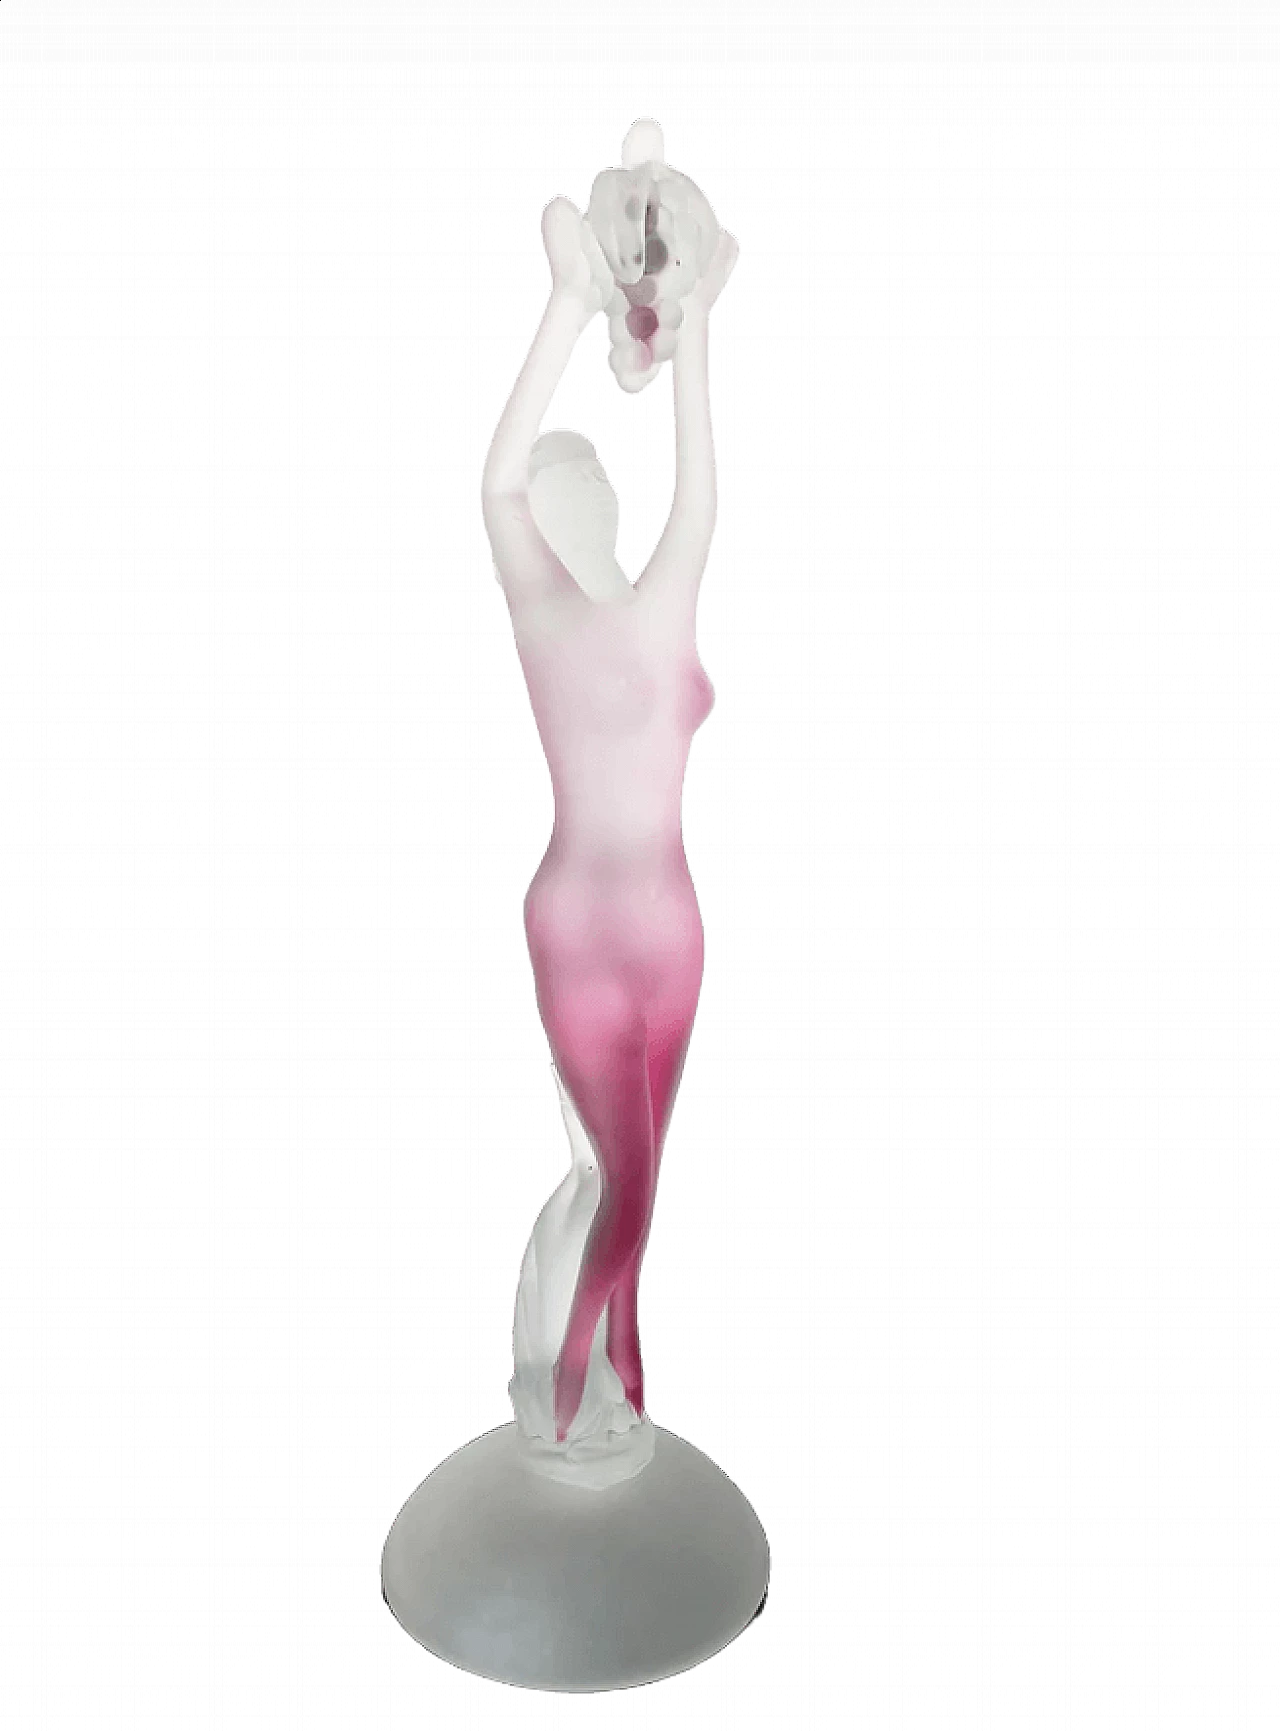 Female nude in Murano glass, 1960s 6